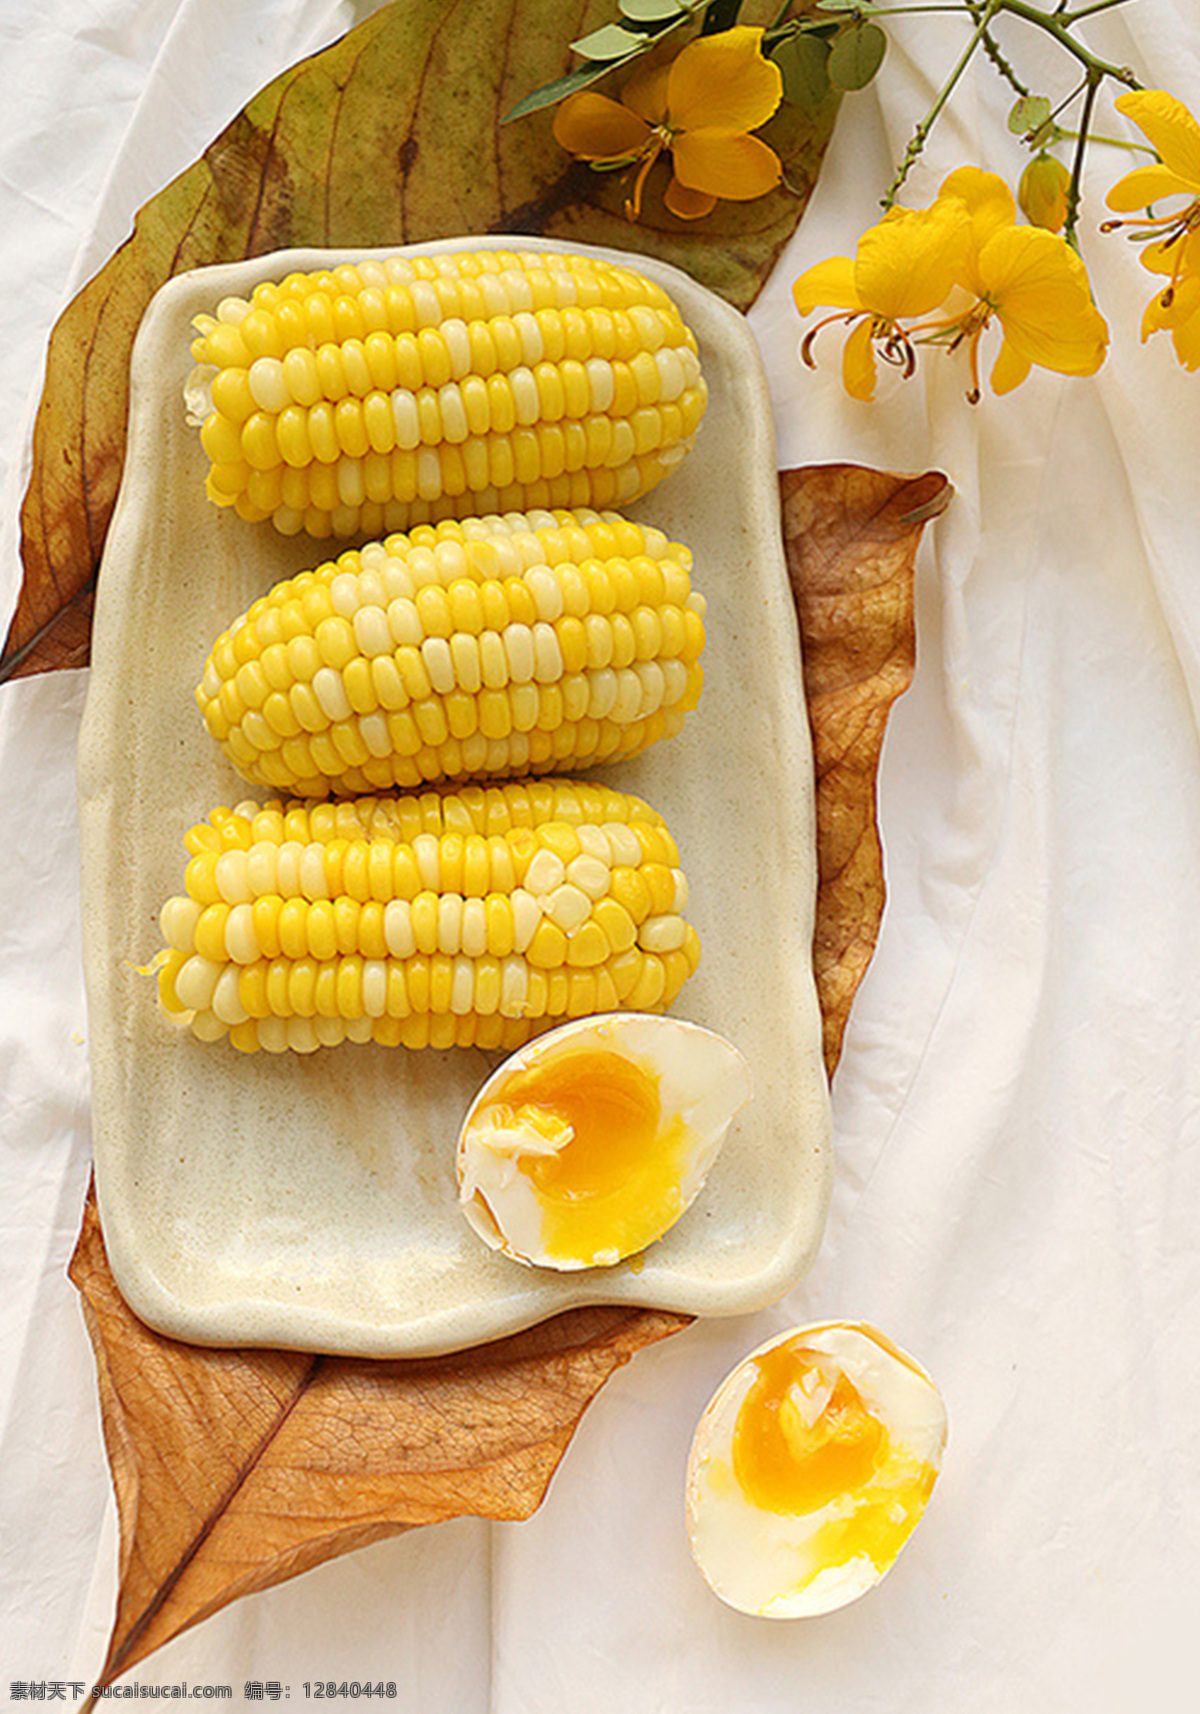 玉米 图 背景 鸭蛋 叶子 秋天 凄凉 美食 食品 背景素材